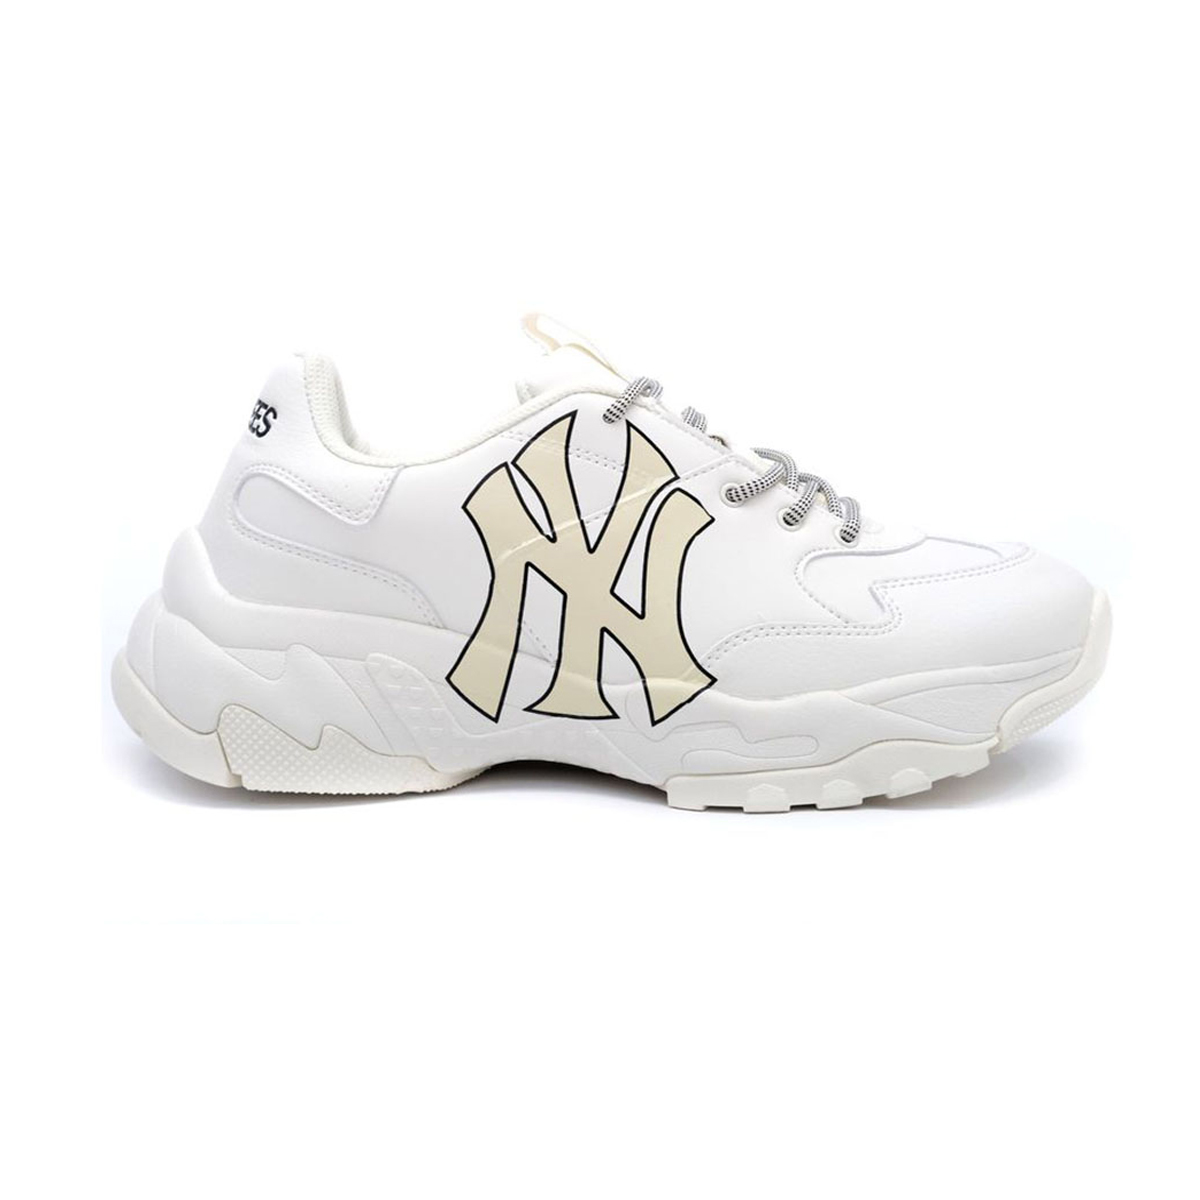 Giày MLB NY trắng chữ vàng Replica